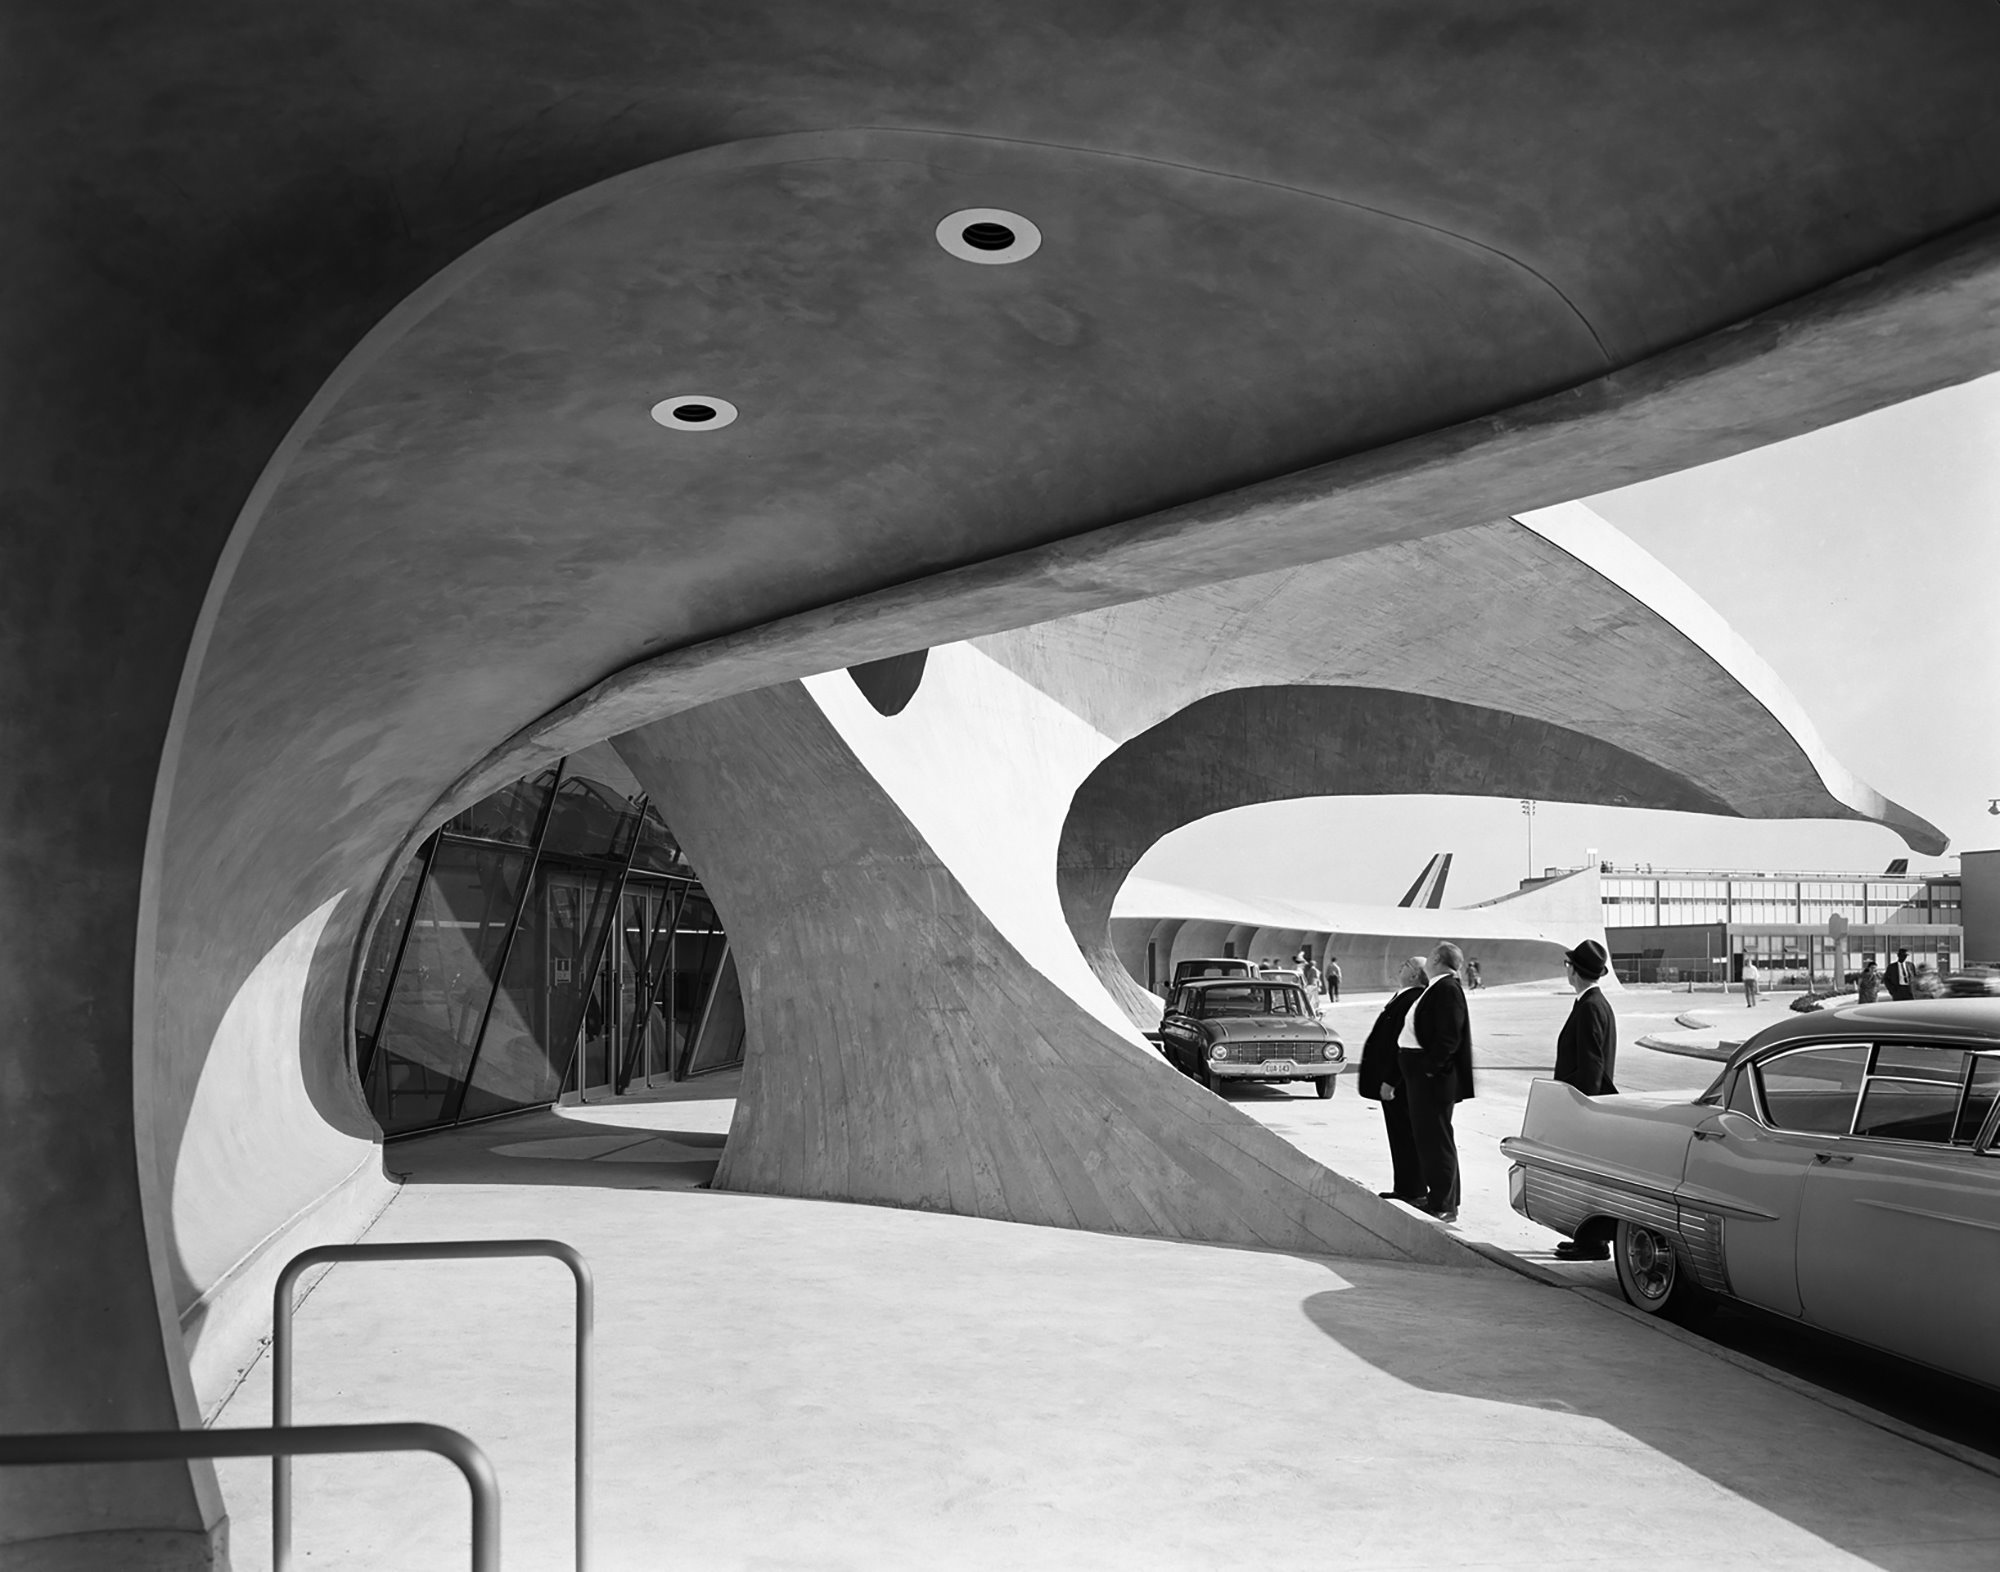 Terminal de la TWA en el aeropuerto JFK New York Eero Saarinen